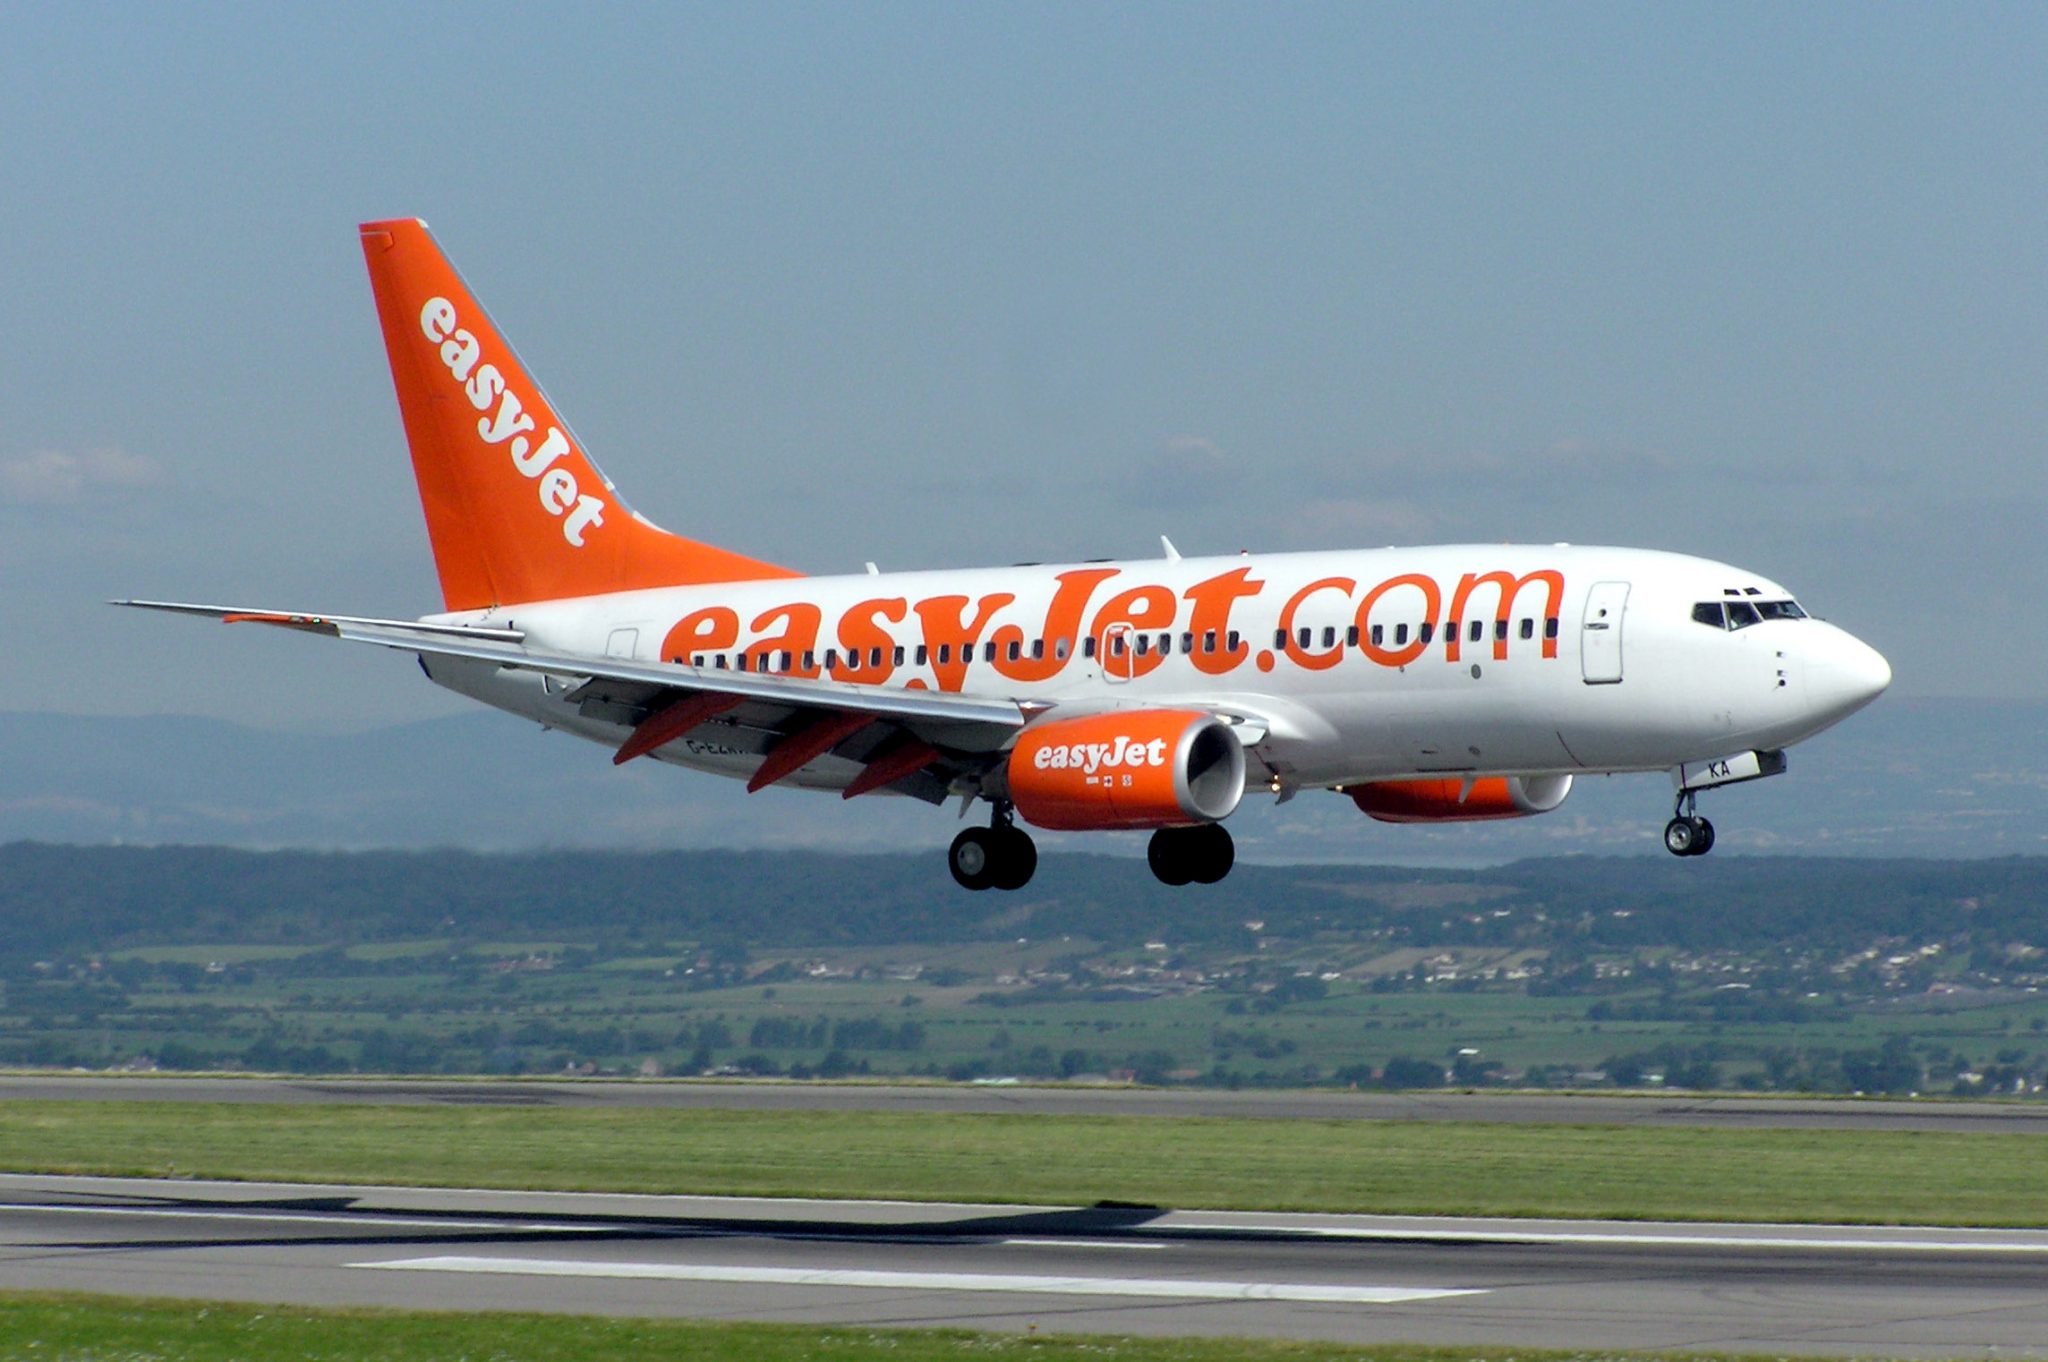 Aérien : EasyJet annonce une nouvelle liaison entre Bristol et Marrakech